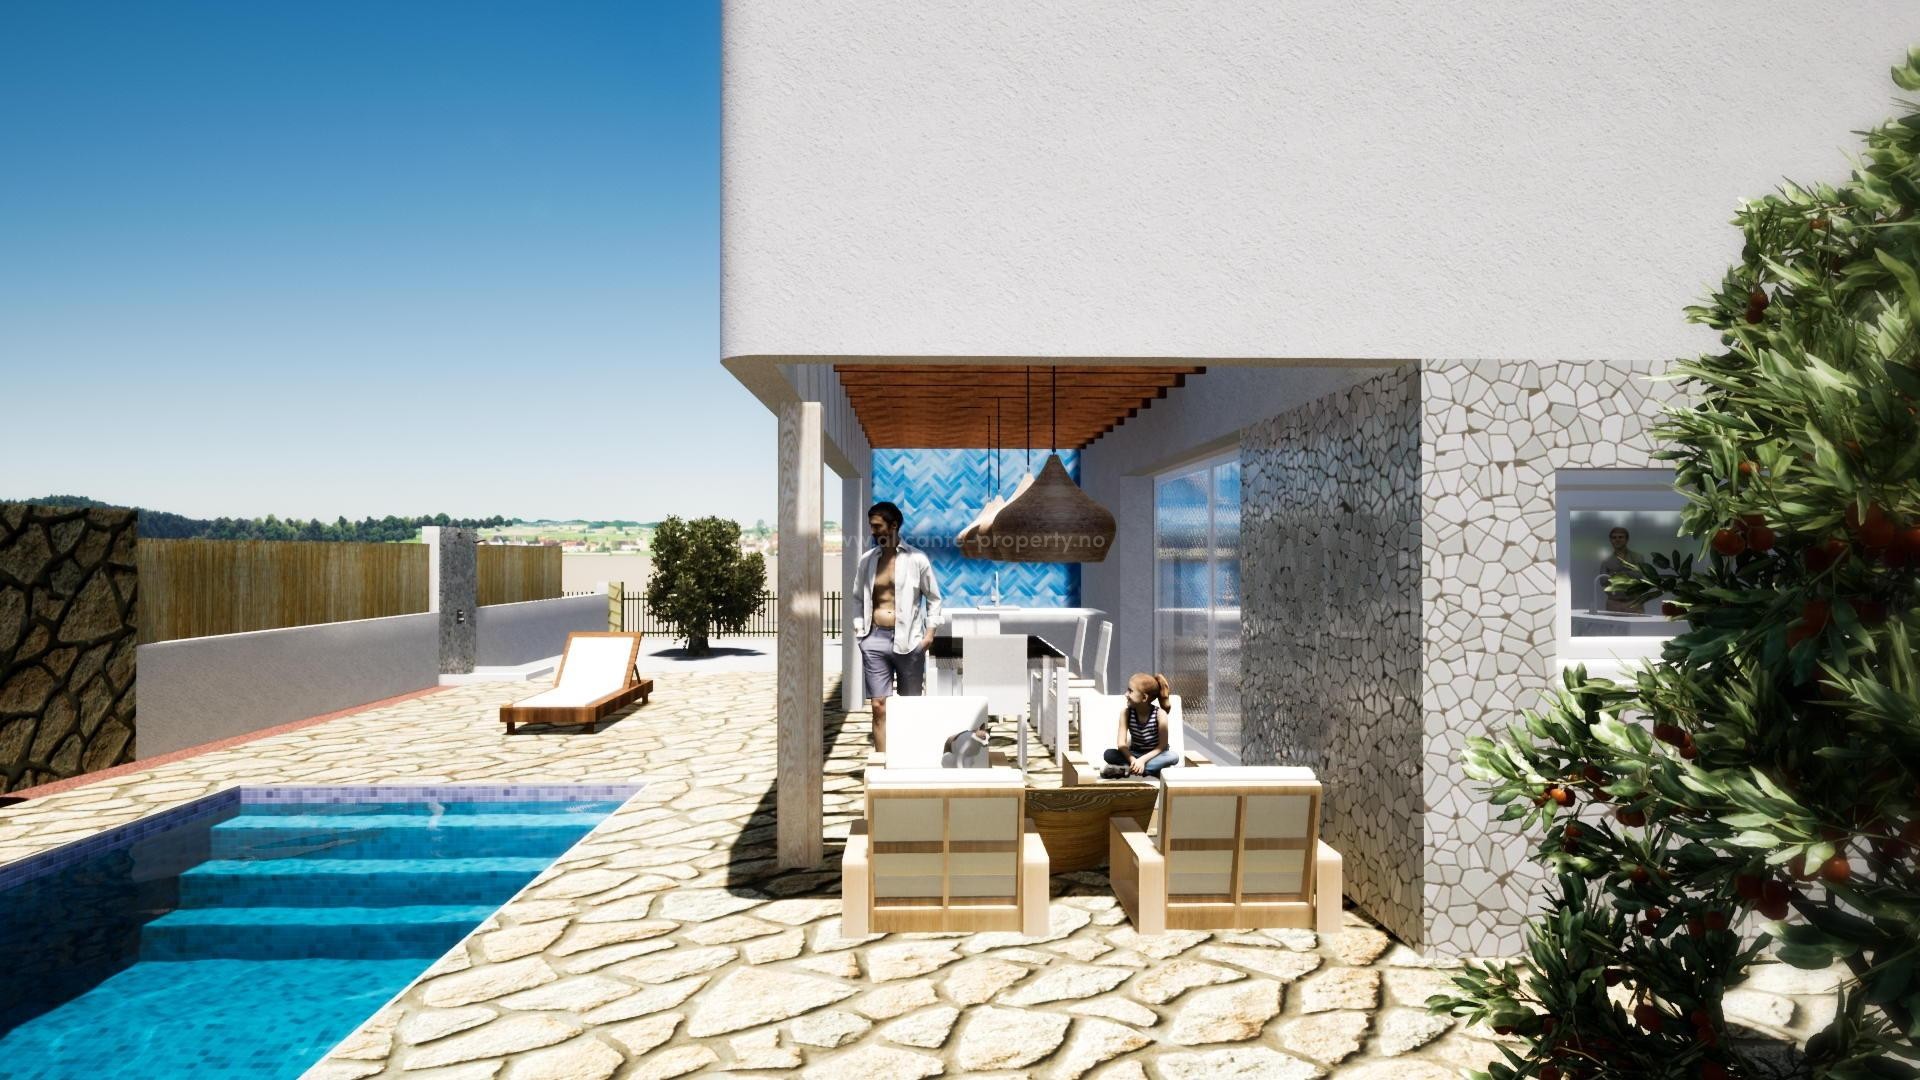 Alfaz del Pi med nye villaer/hus i Ibiza-stil, 3 soverom, 2 bad, stort utvendig bassengområde. Hovedsoverommet har walk-in closet og eget bad